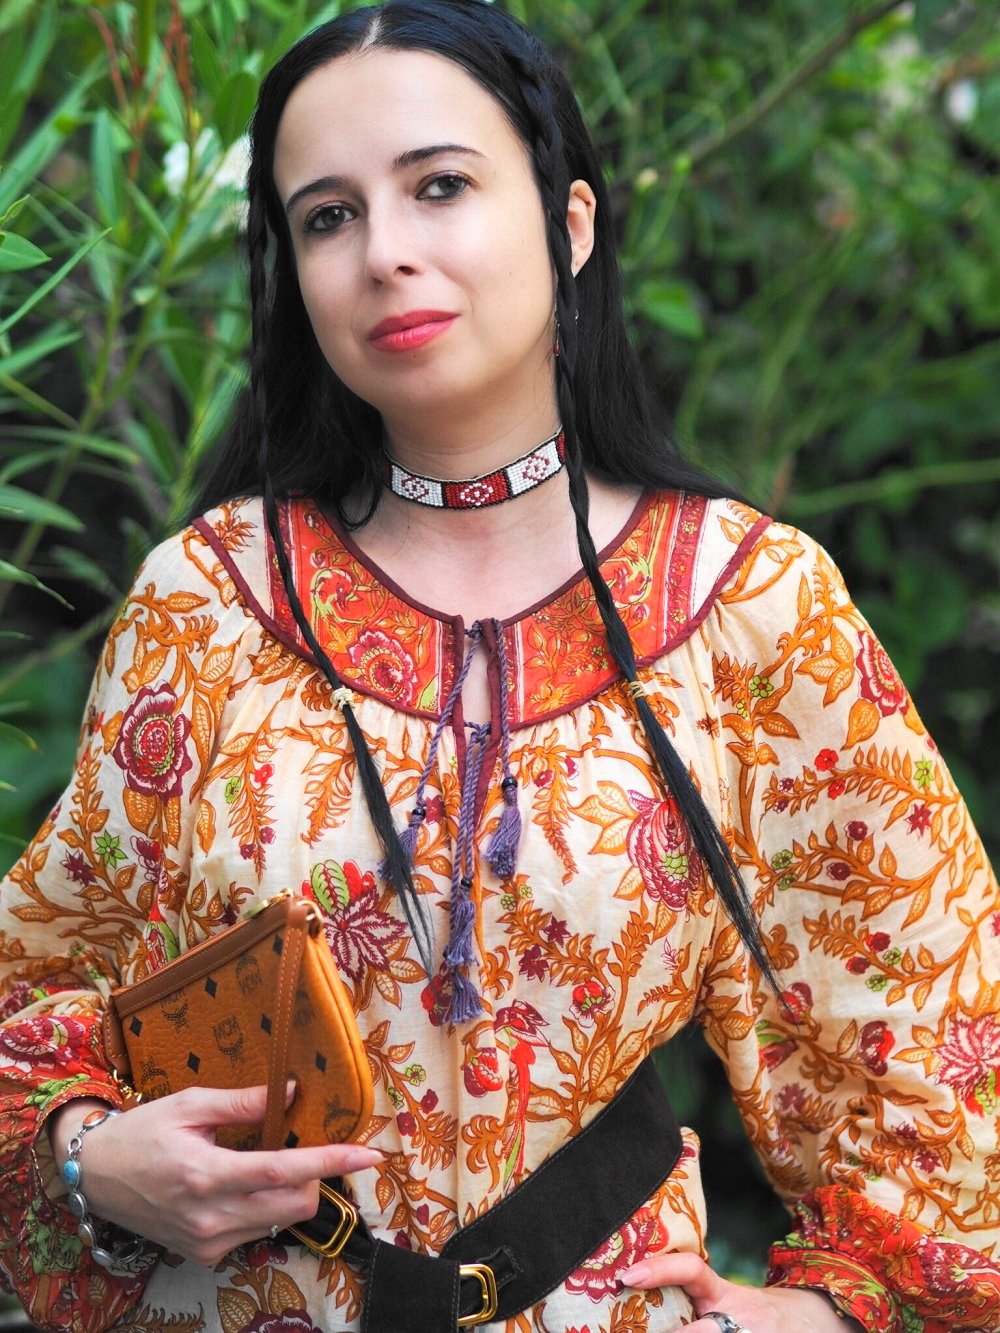 Heute zeige ich euch ein Indian Summer Outfit passend zum Herbst und erzähle euch die Geschichte von der echten Pocahontas